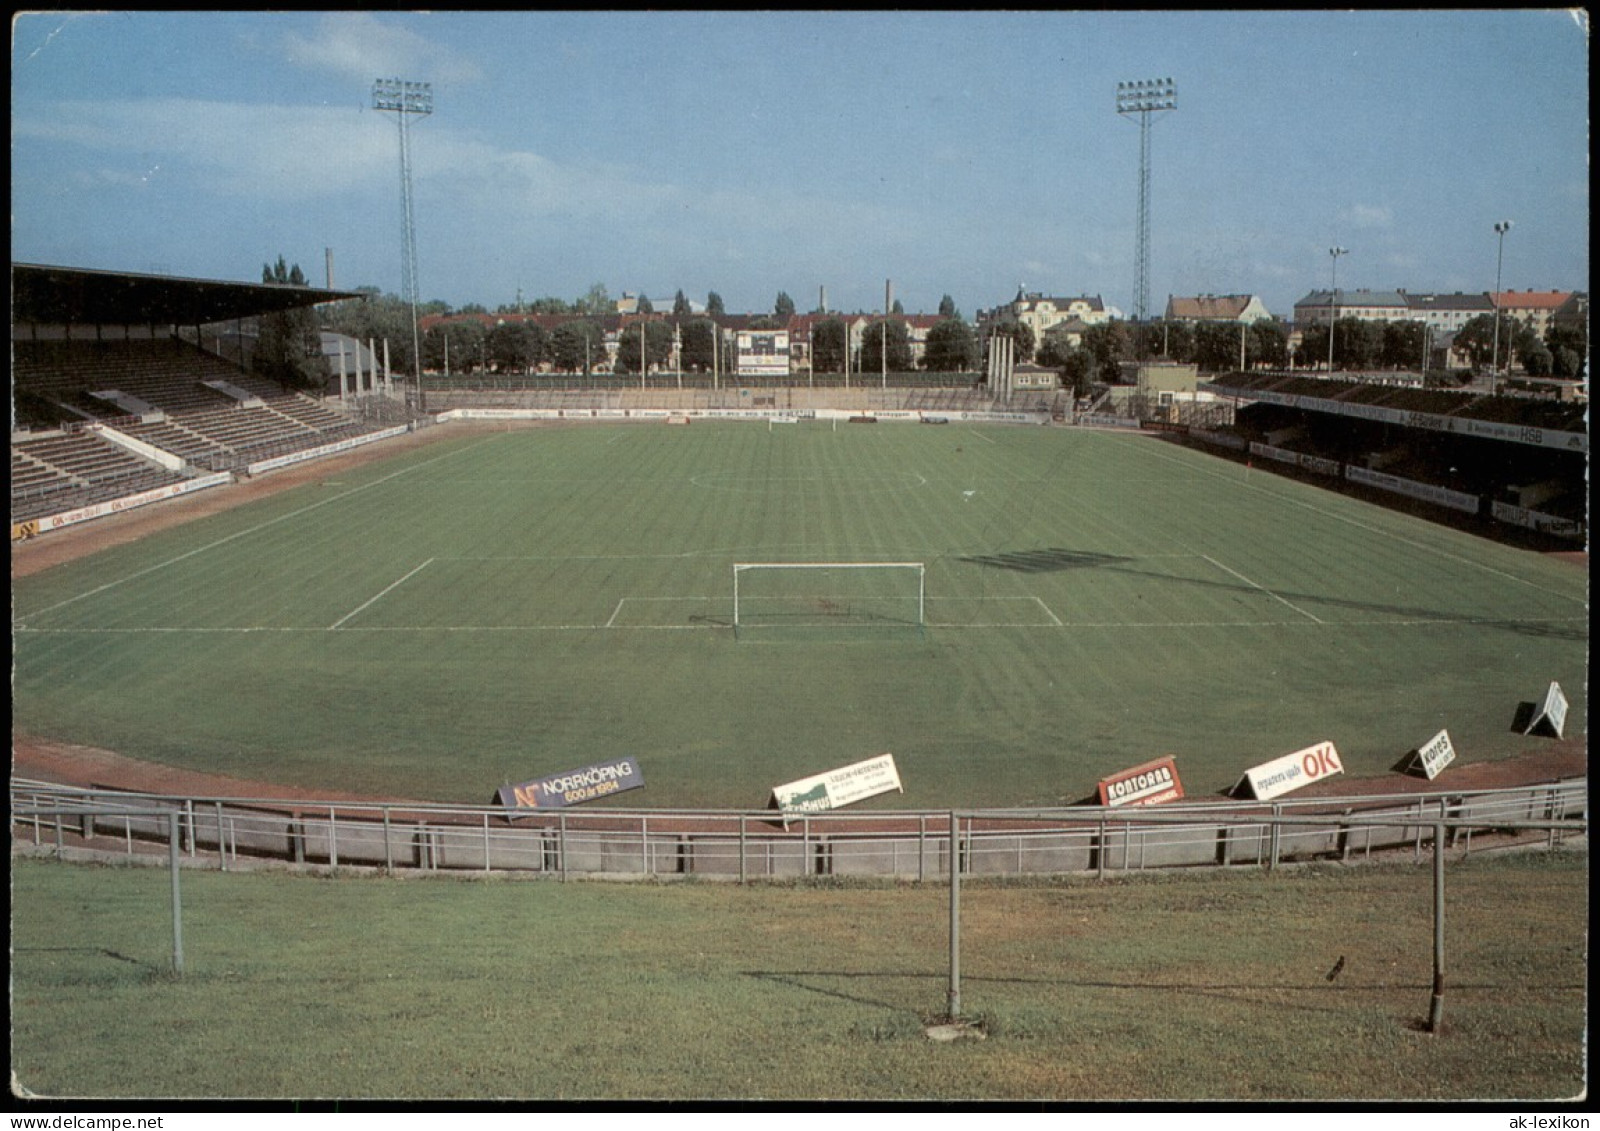 Norrköping Idrottsparken Stadion Fussball Football Soccer Stadium 1980 - Schweden